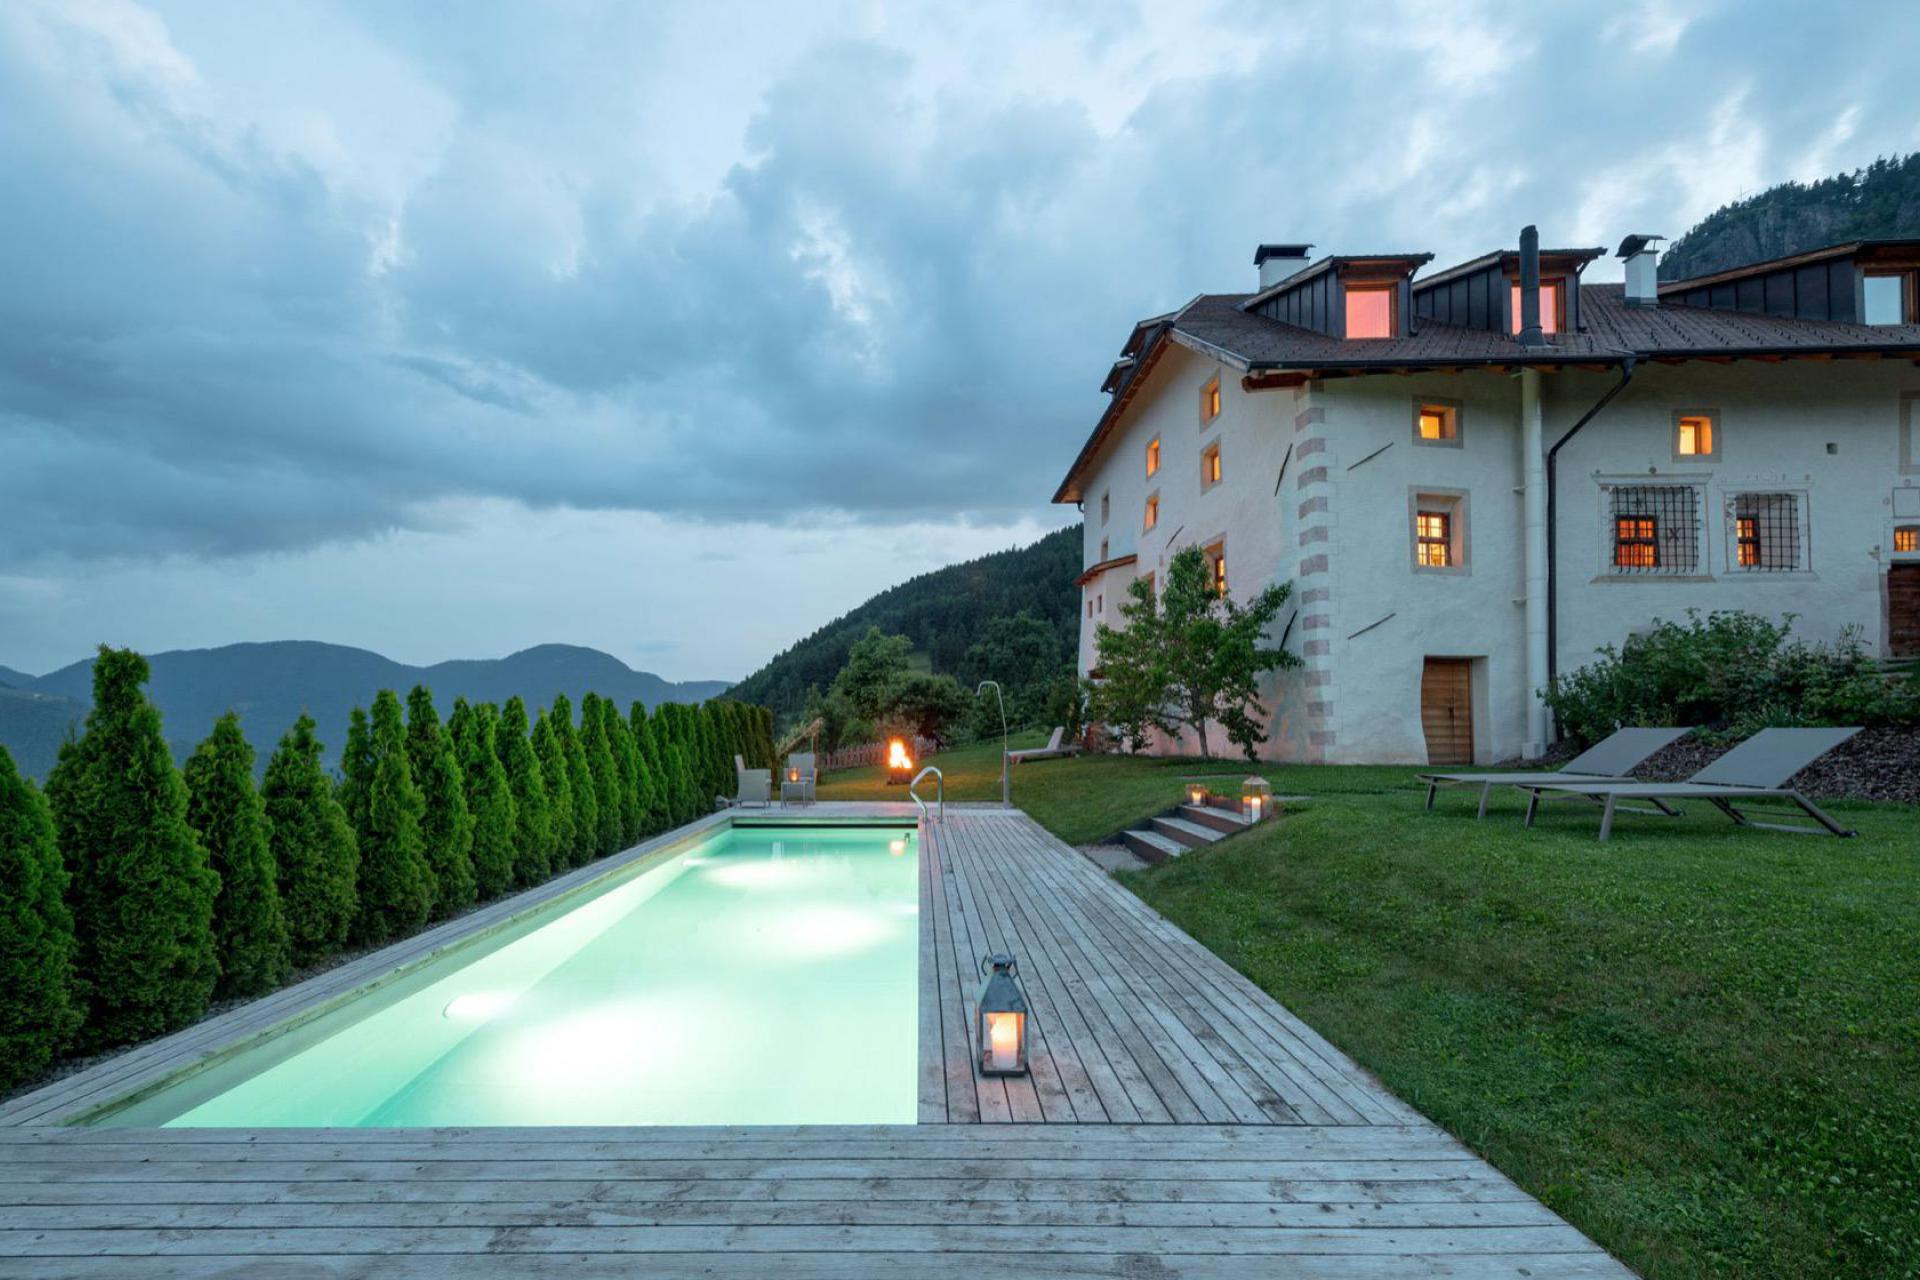 Sudtiroler gastvrijheid in een luxe agritursmo met kamers B&B